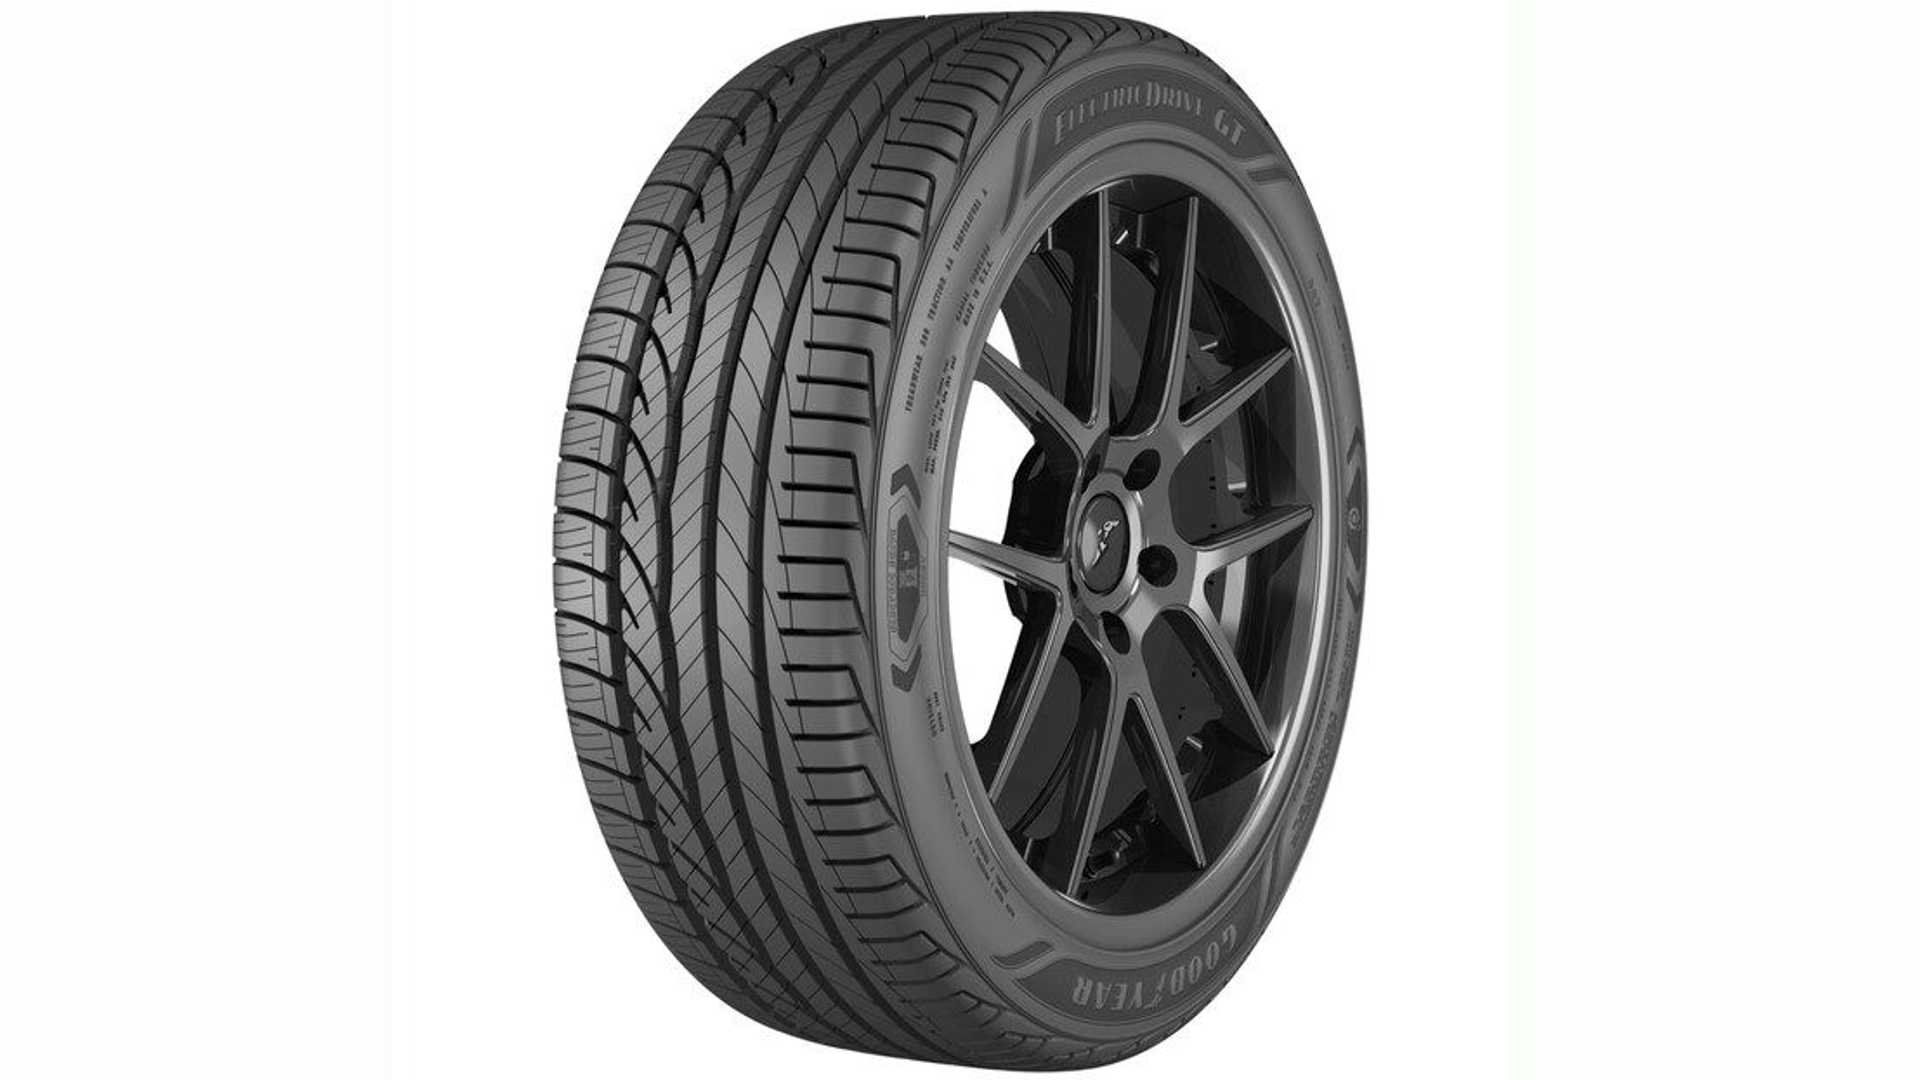 Surgonfler les pneus - Voitures électriques - Forum Automobile Propre